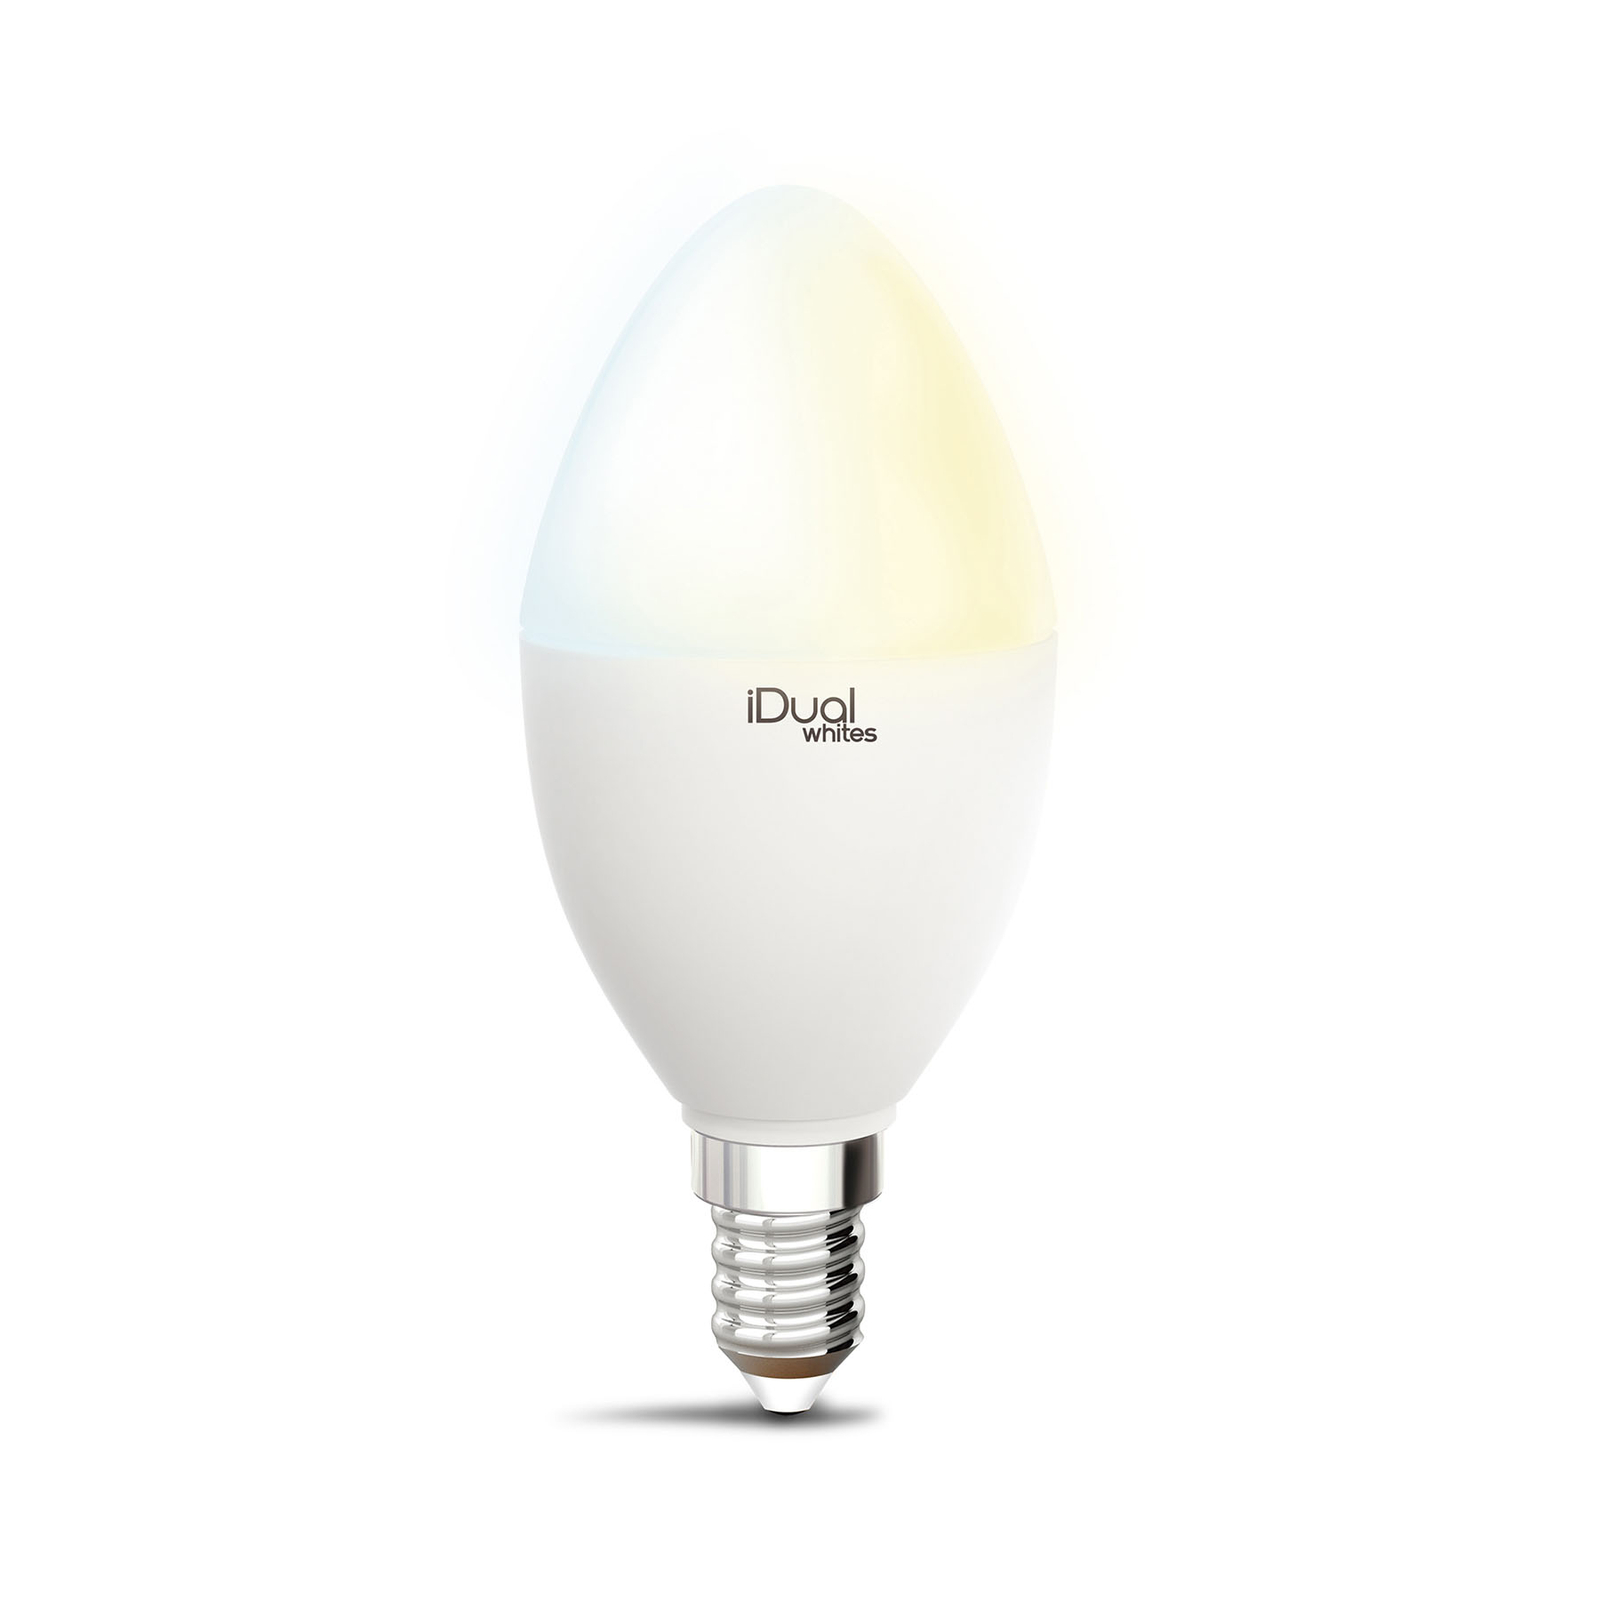 iDual Whites LED lámpa gyertya P45 E14 5,5W